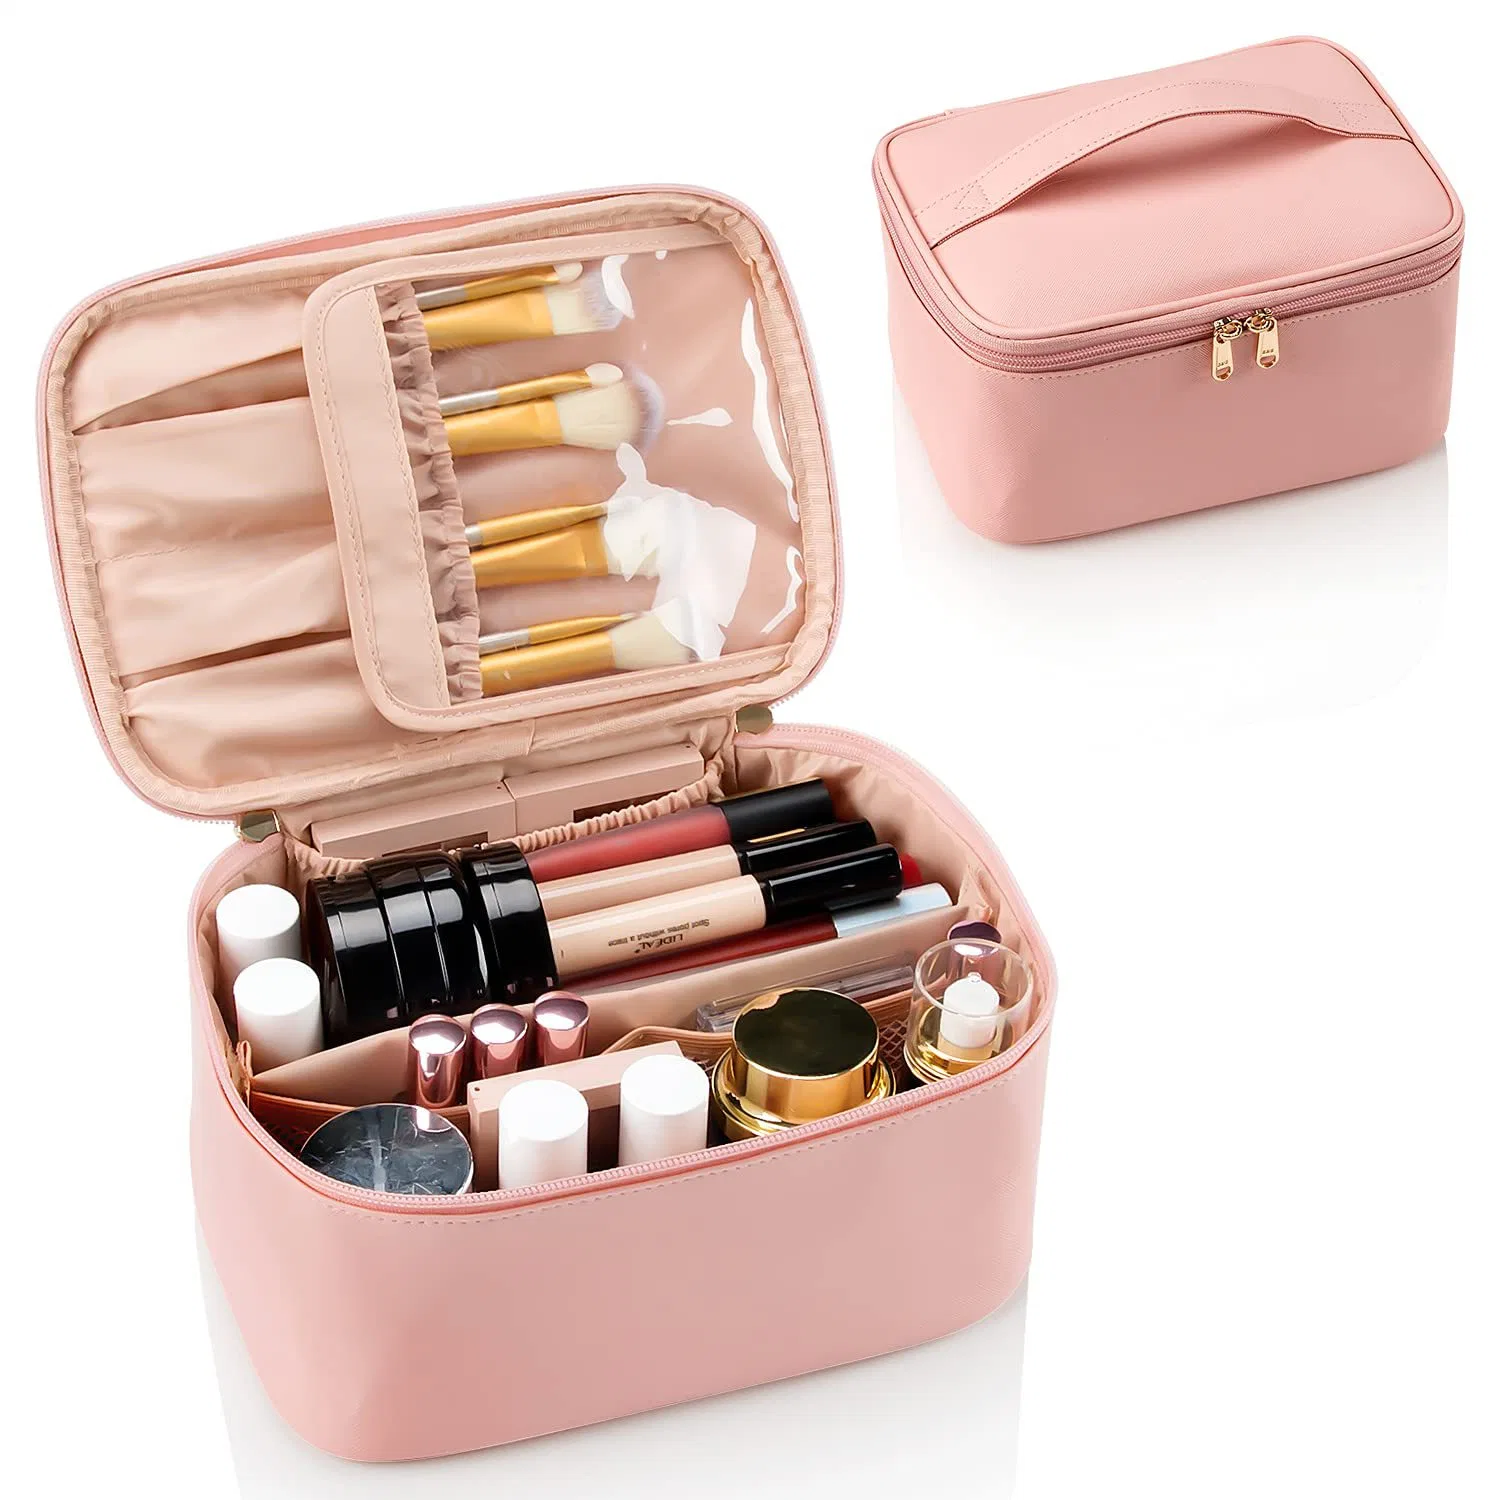 Fuliya Large Capacity Makeup Storage Case for Women Portable Waterproof Cosmetic Packaging Bag